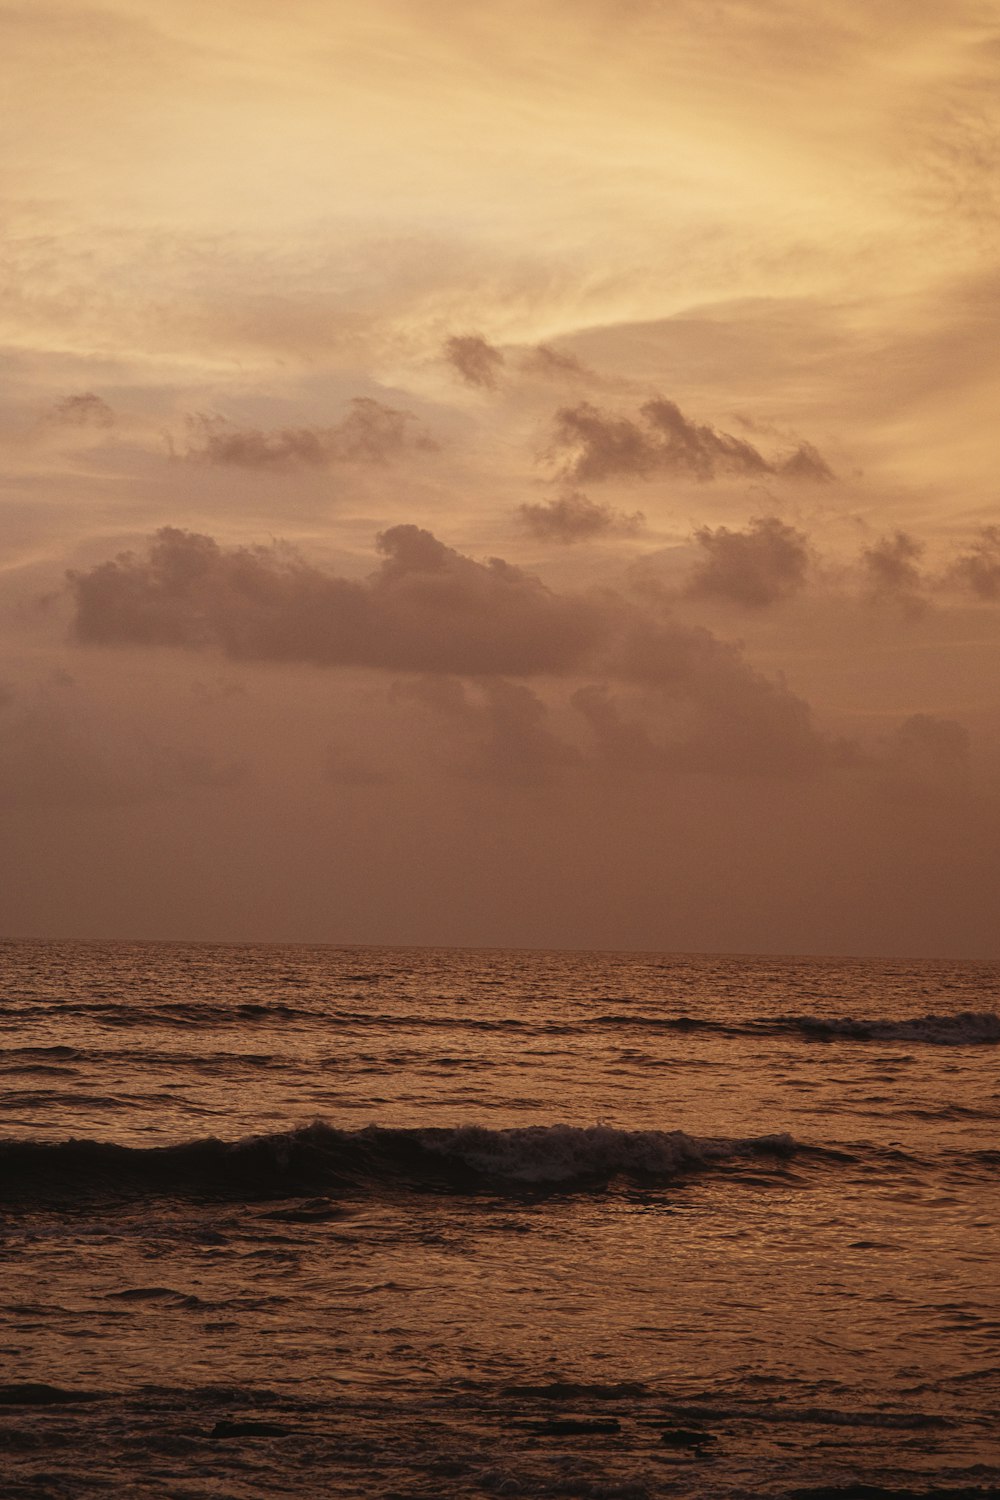 ocean during golden hour